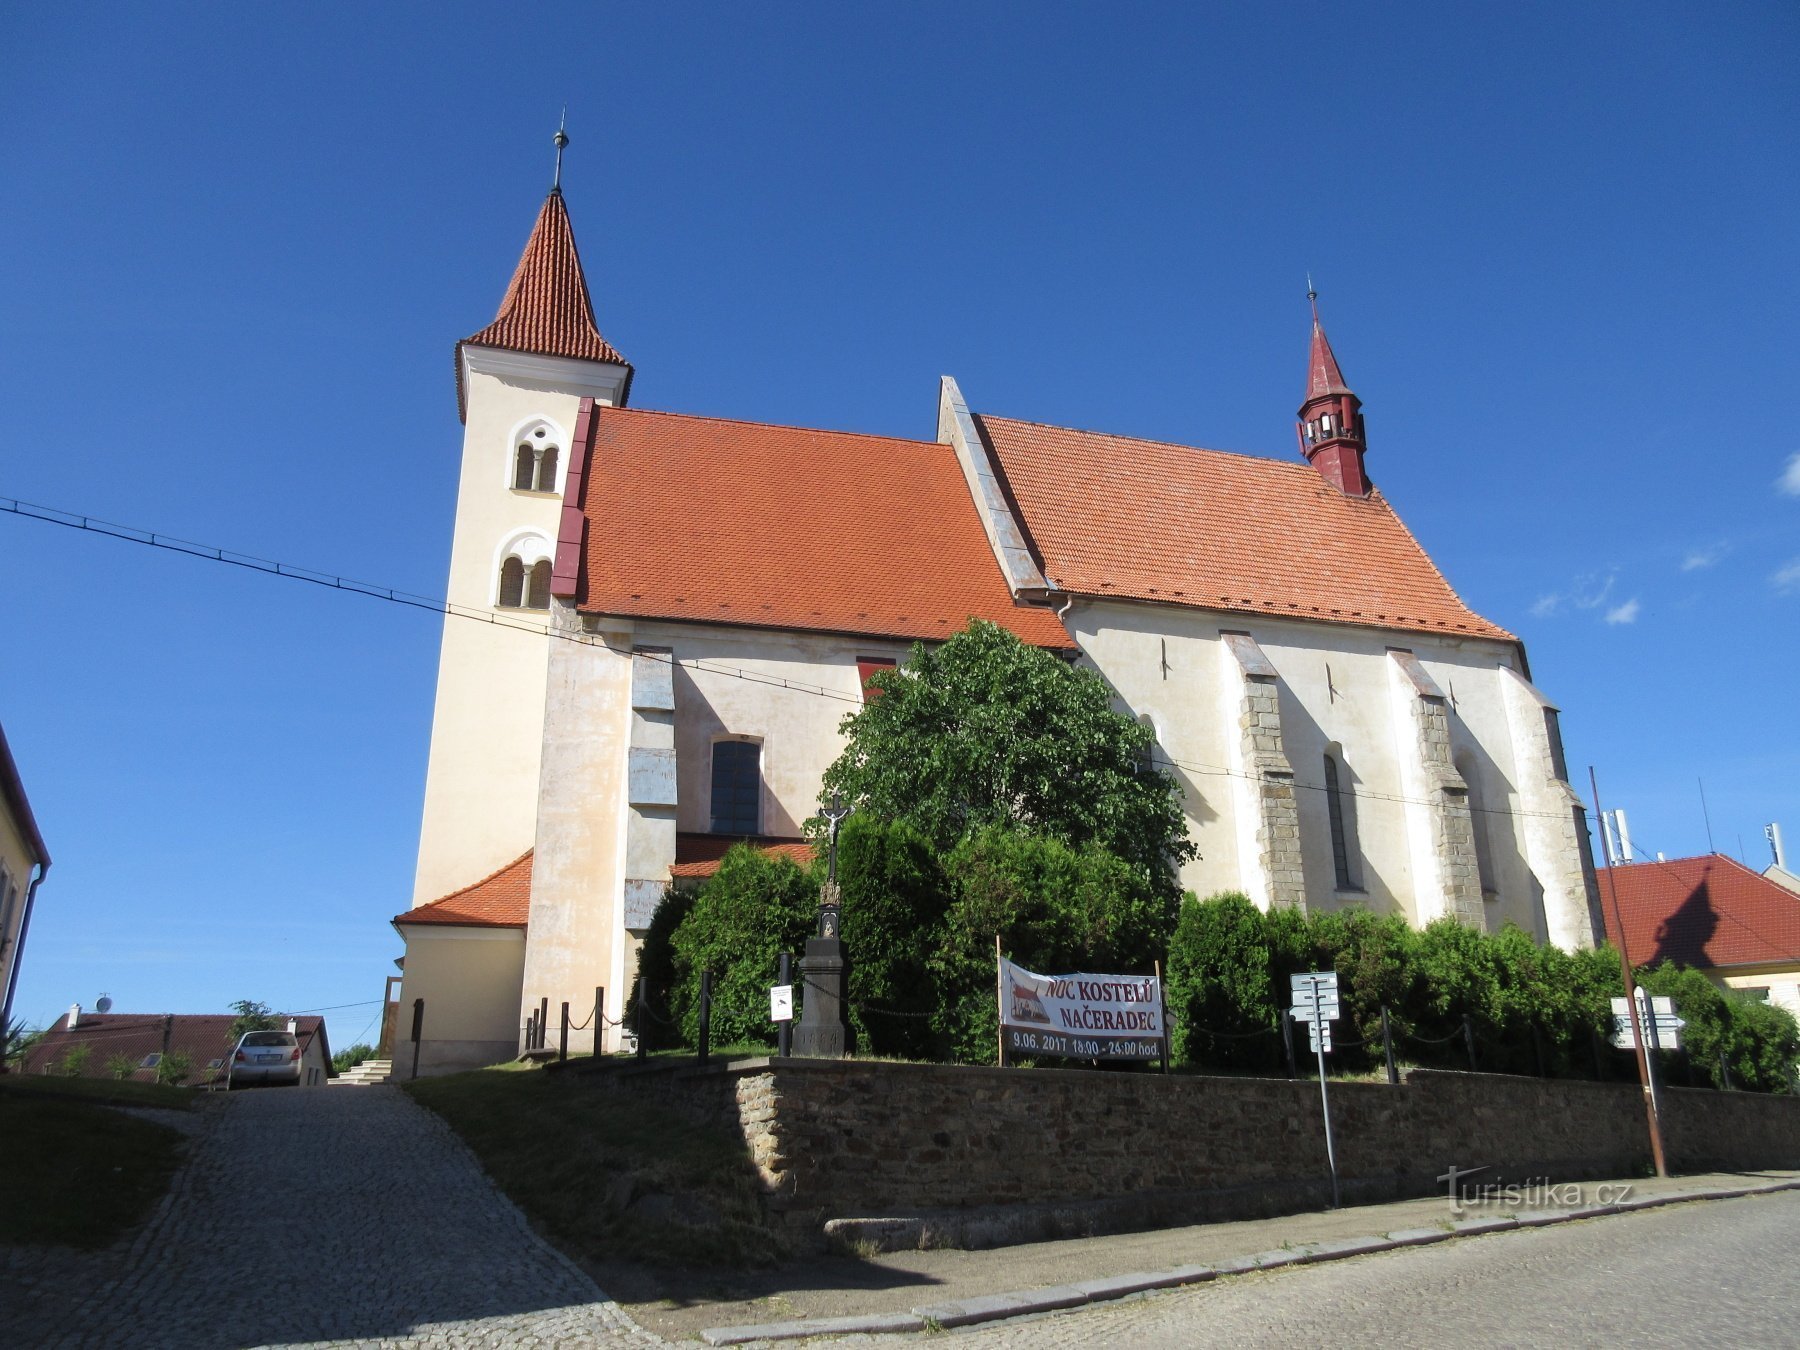 Načeradec – kyrka och fästning